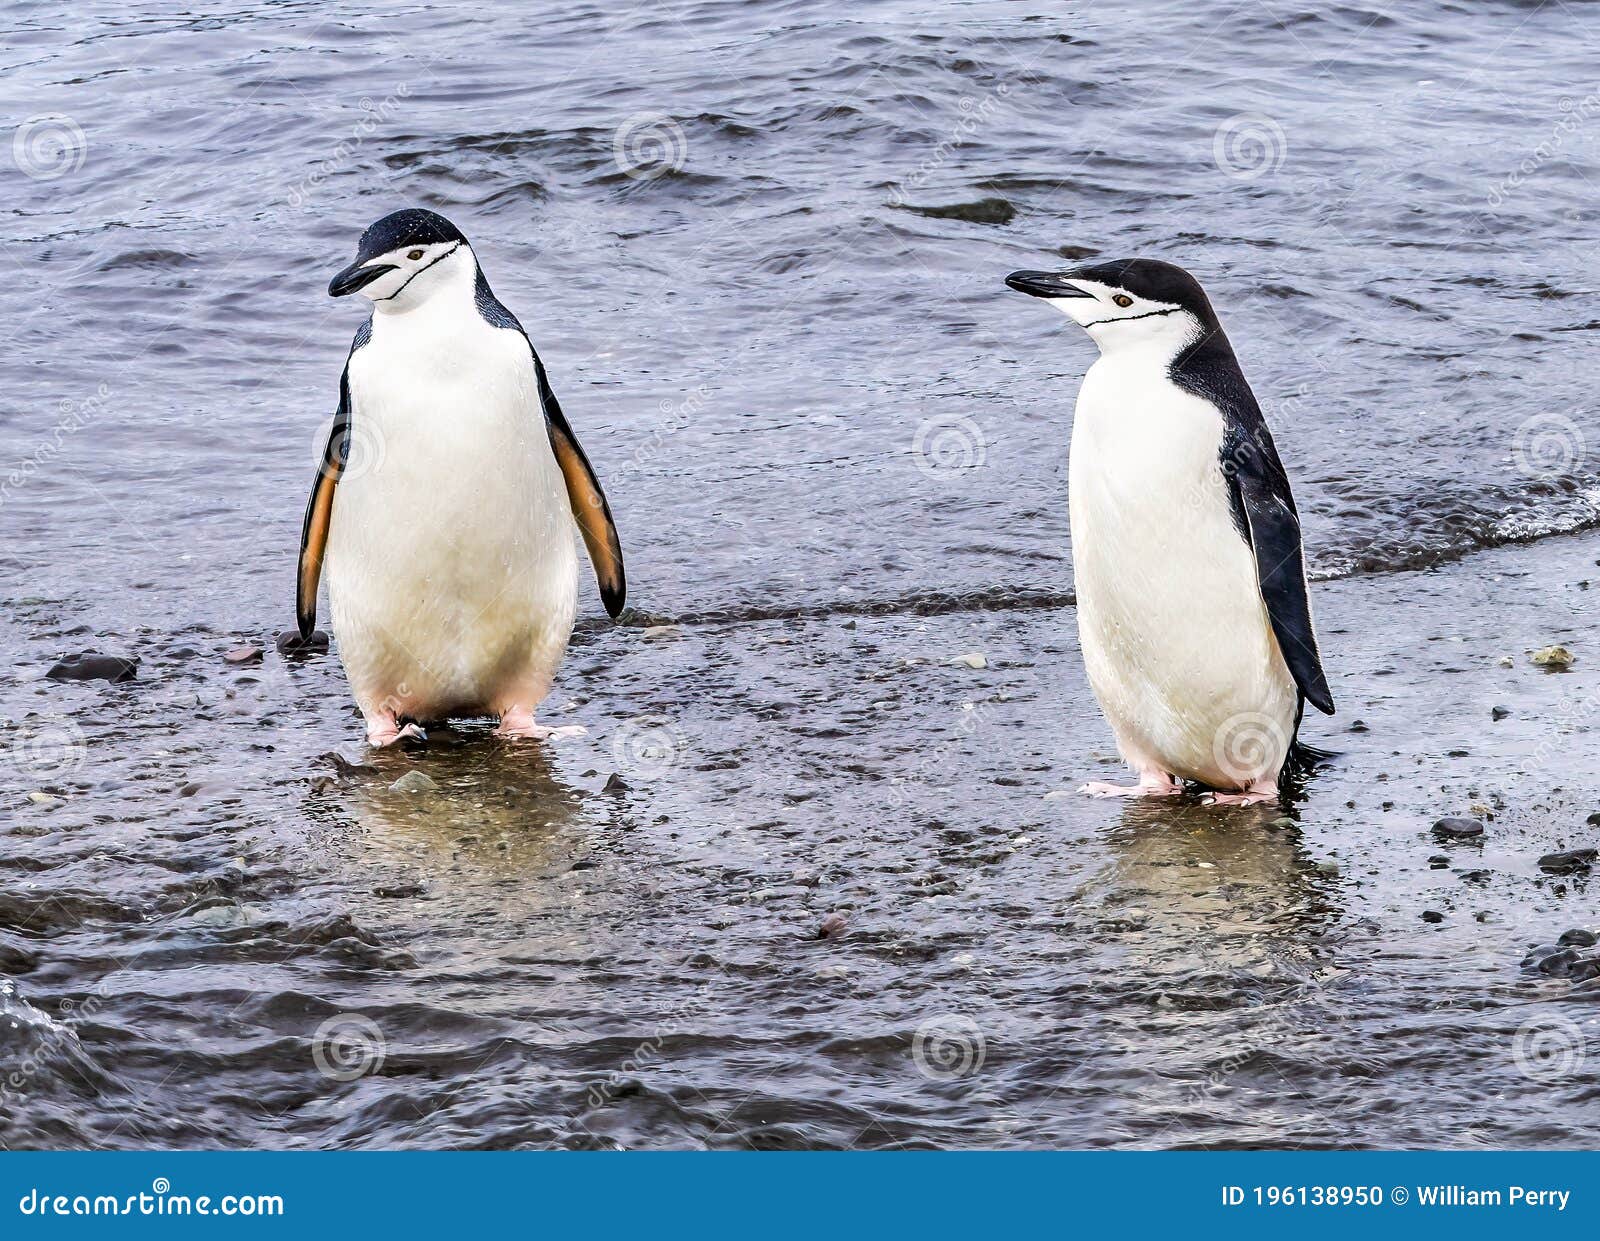 南极有几种企鹅？ - 南极百科